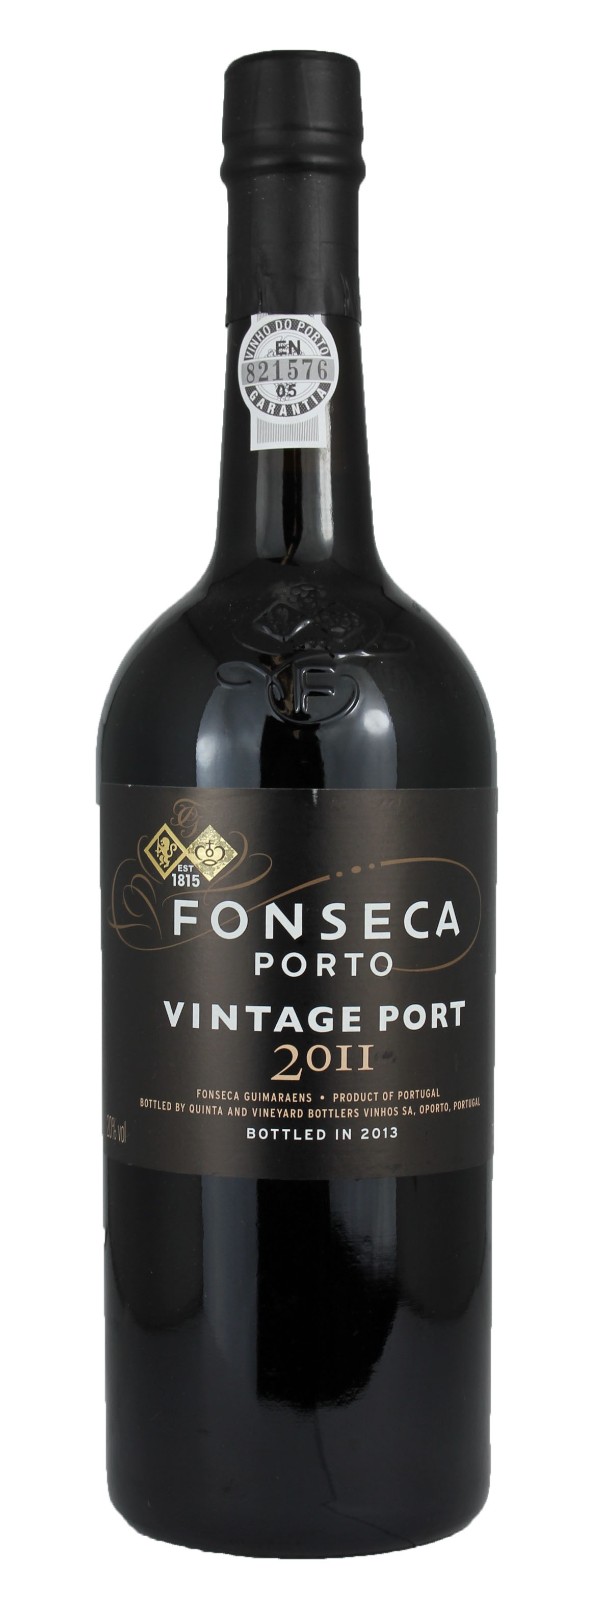 Fonseca Port, Vintage Port, 2011 | Vintage Wine and Port